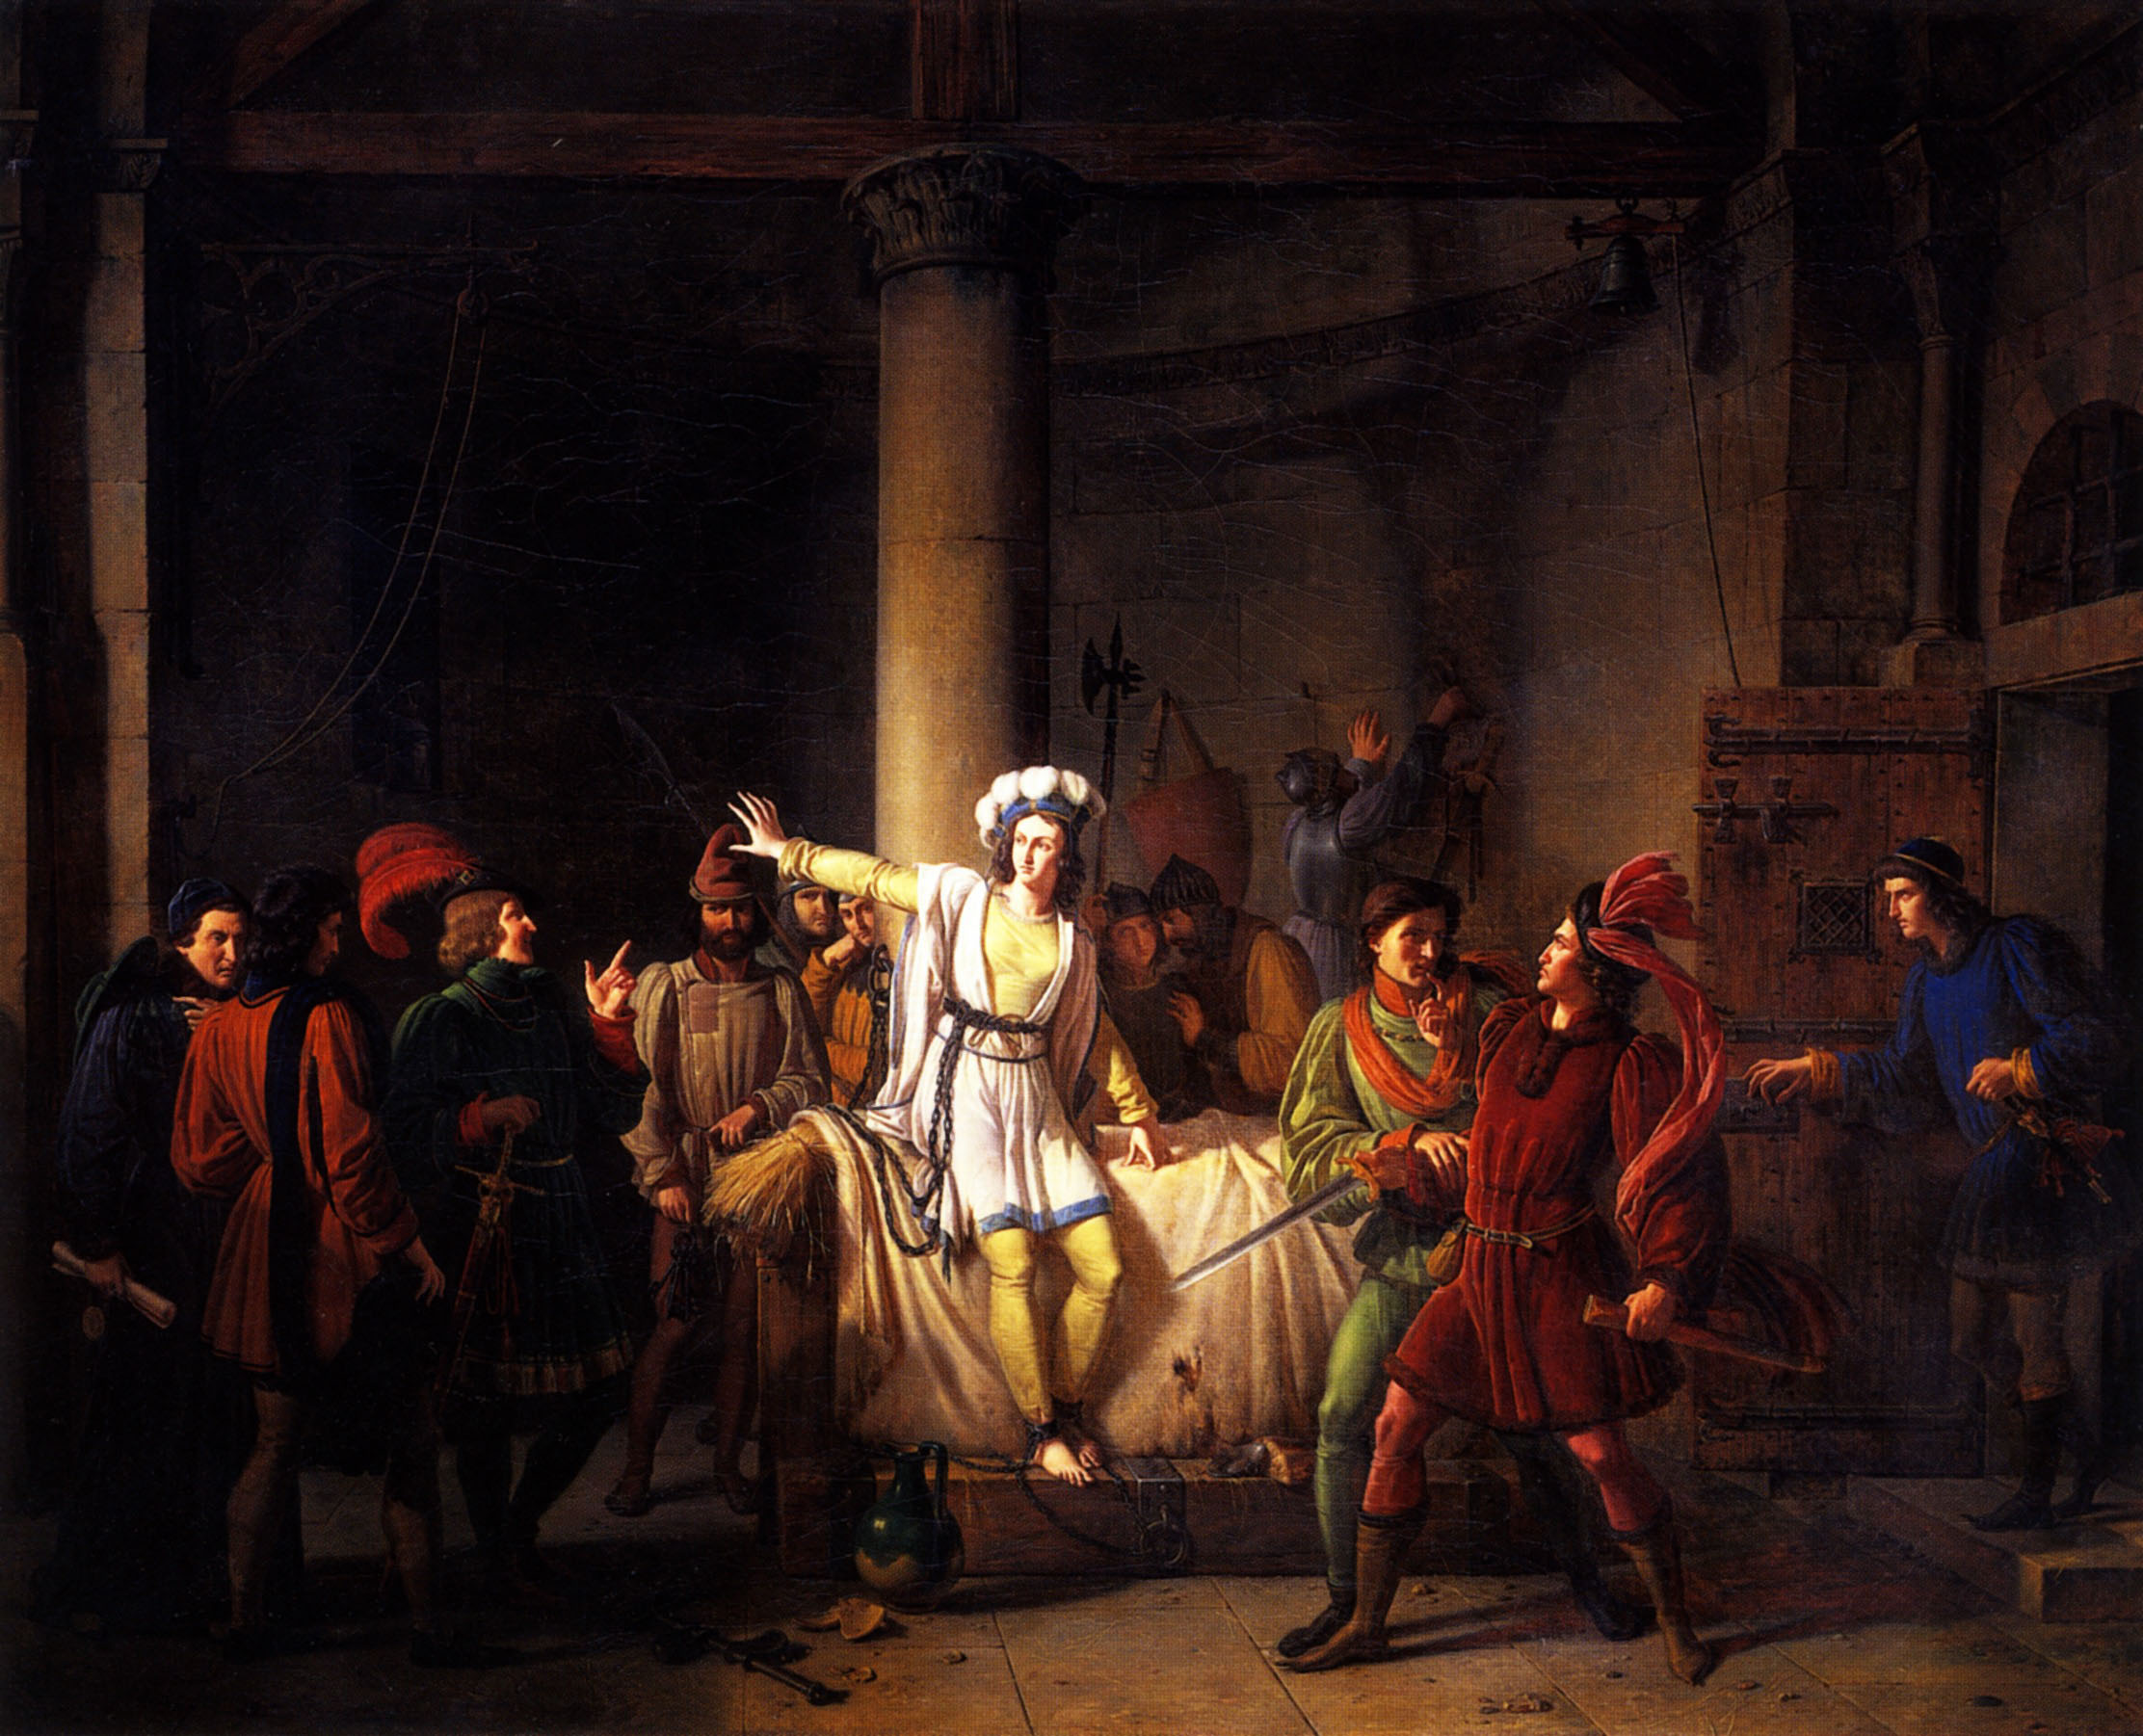 Анри Ревойл. "Заключение Жанны д'Арк под стражу в Руане". 1819.